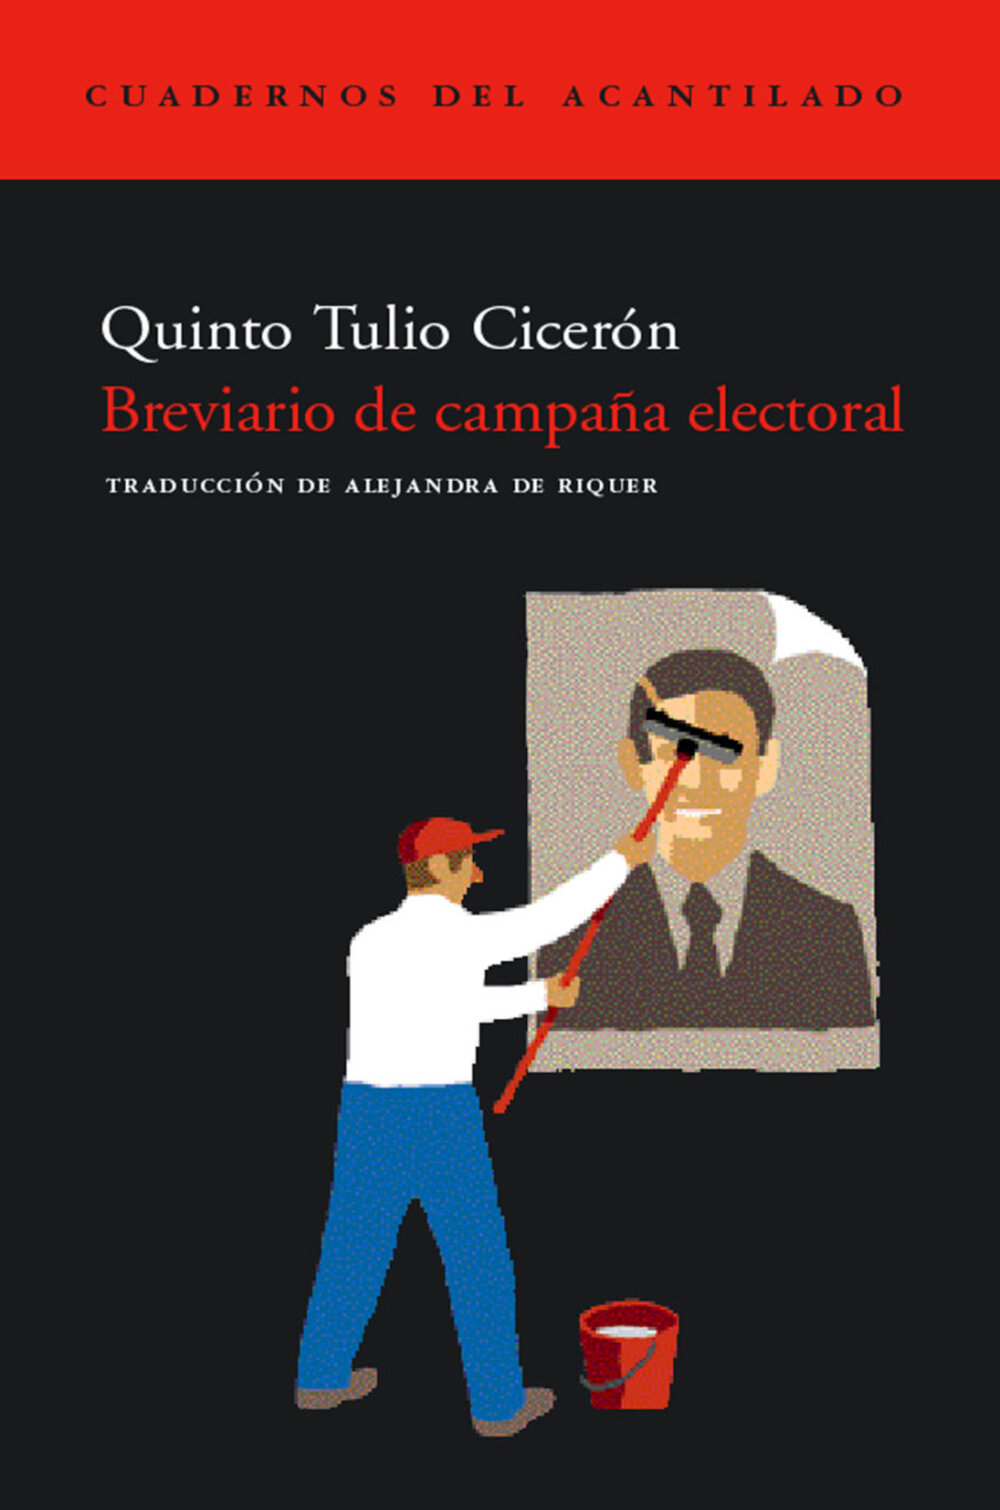 Breviario de campaña electoralTulio Cicerón, Quinto